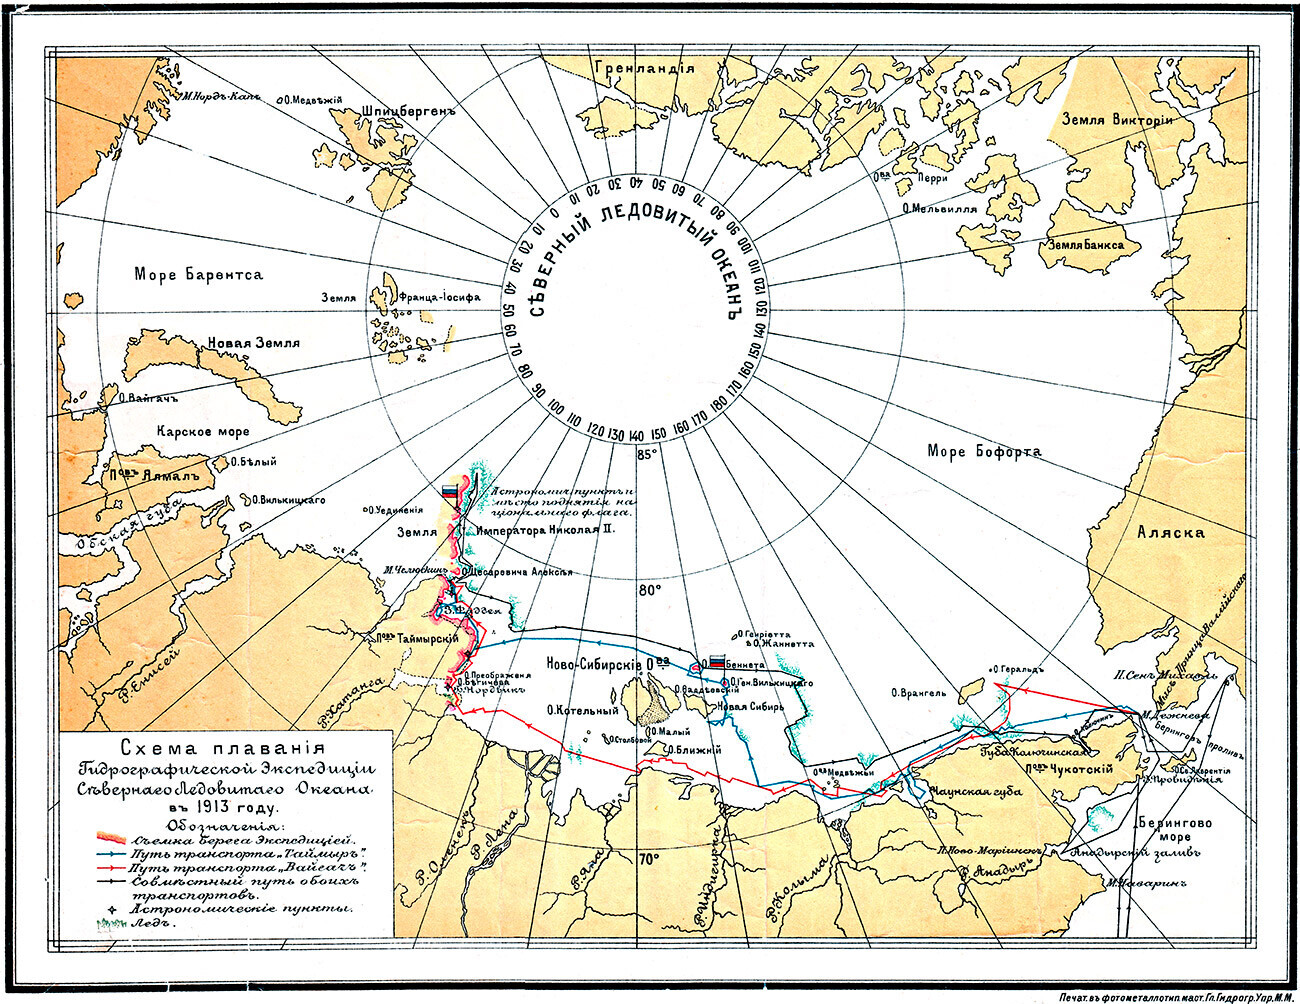 Pot potovanja hidrografske odprave po Arktičnem oceanu leta 1913
